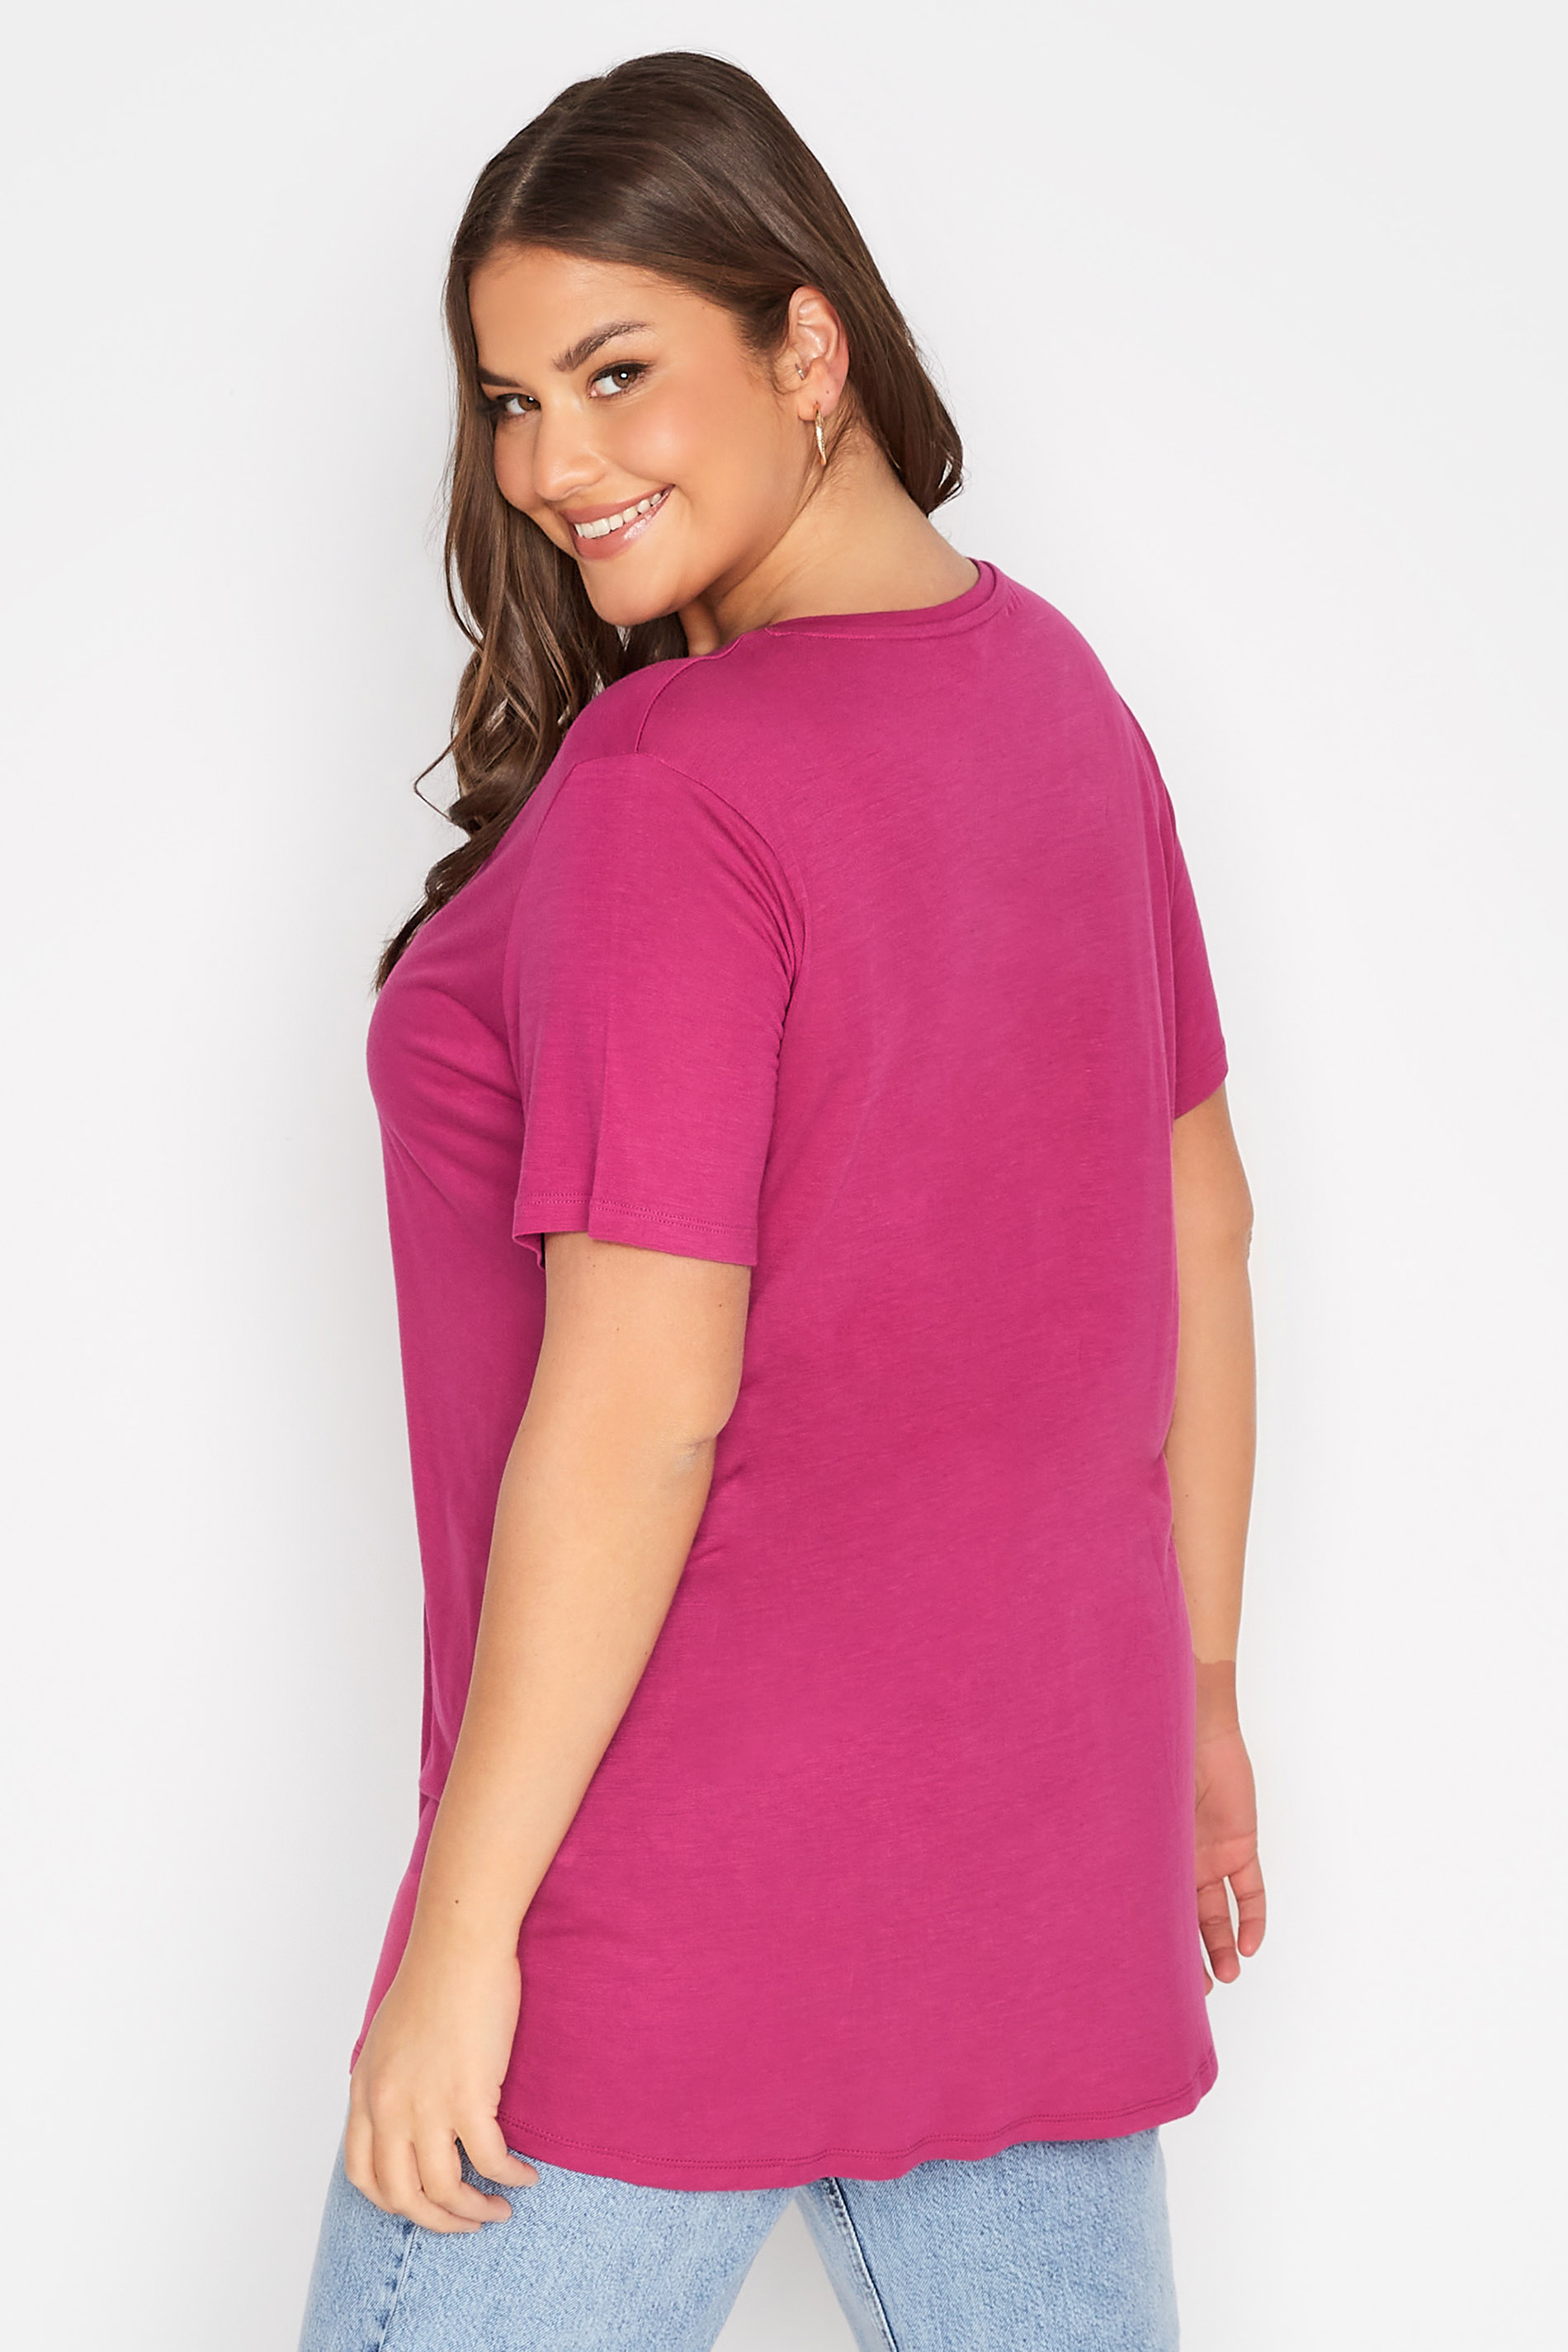 Grande taille  Tops Grande taille  T-Shirts | T-Shirt Rose Brodé Aztèque à Ficelle - TP94372